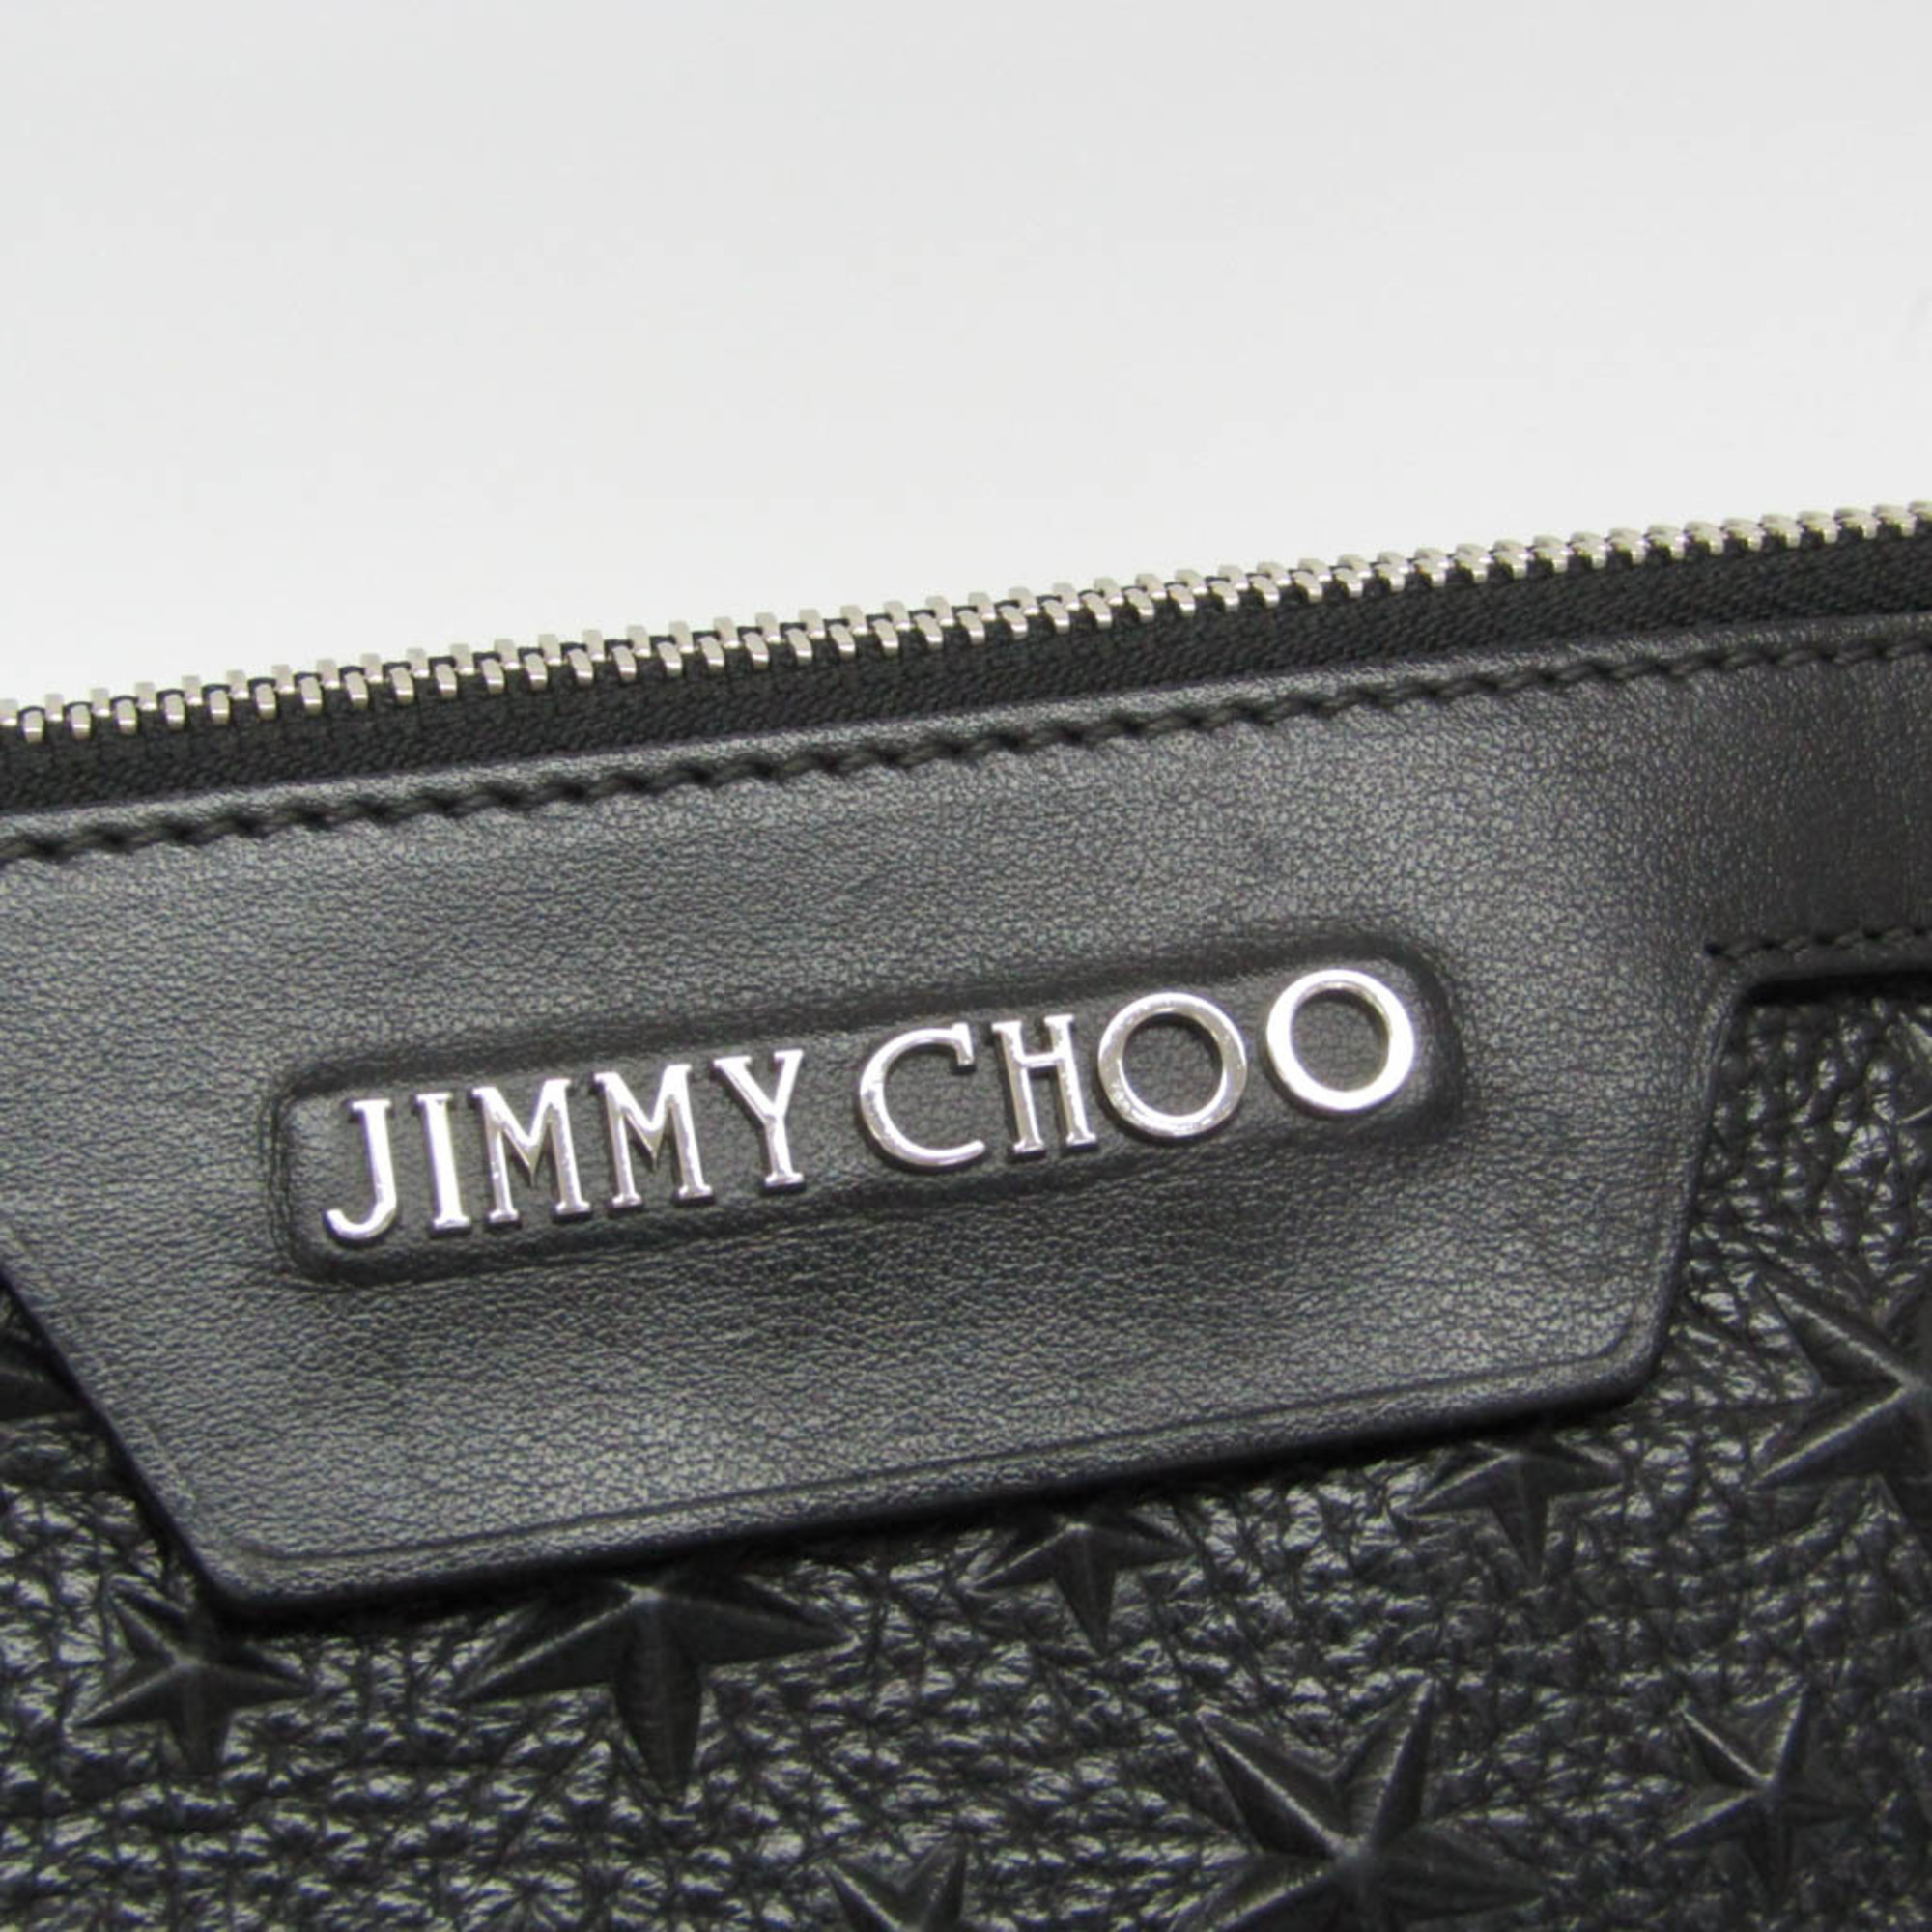 Jimmy Choo DEREK Men,Women Leather Studded Clutch Bag Black